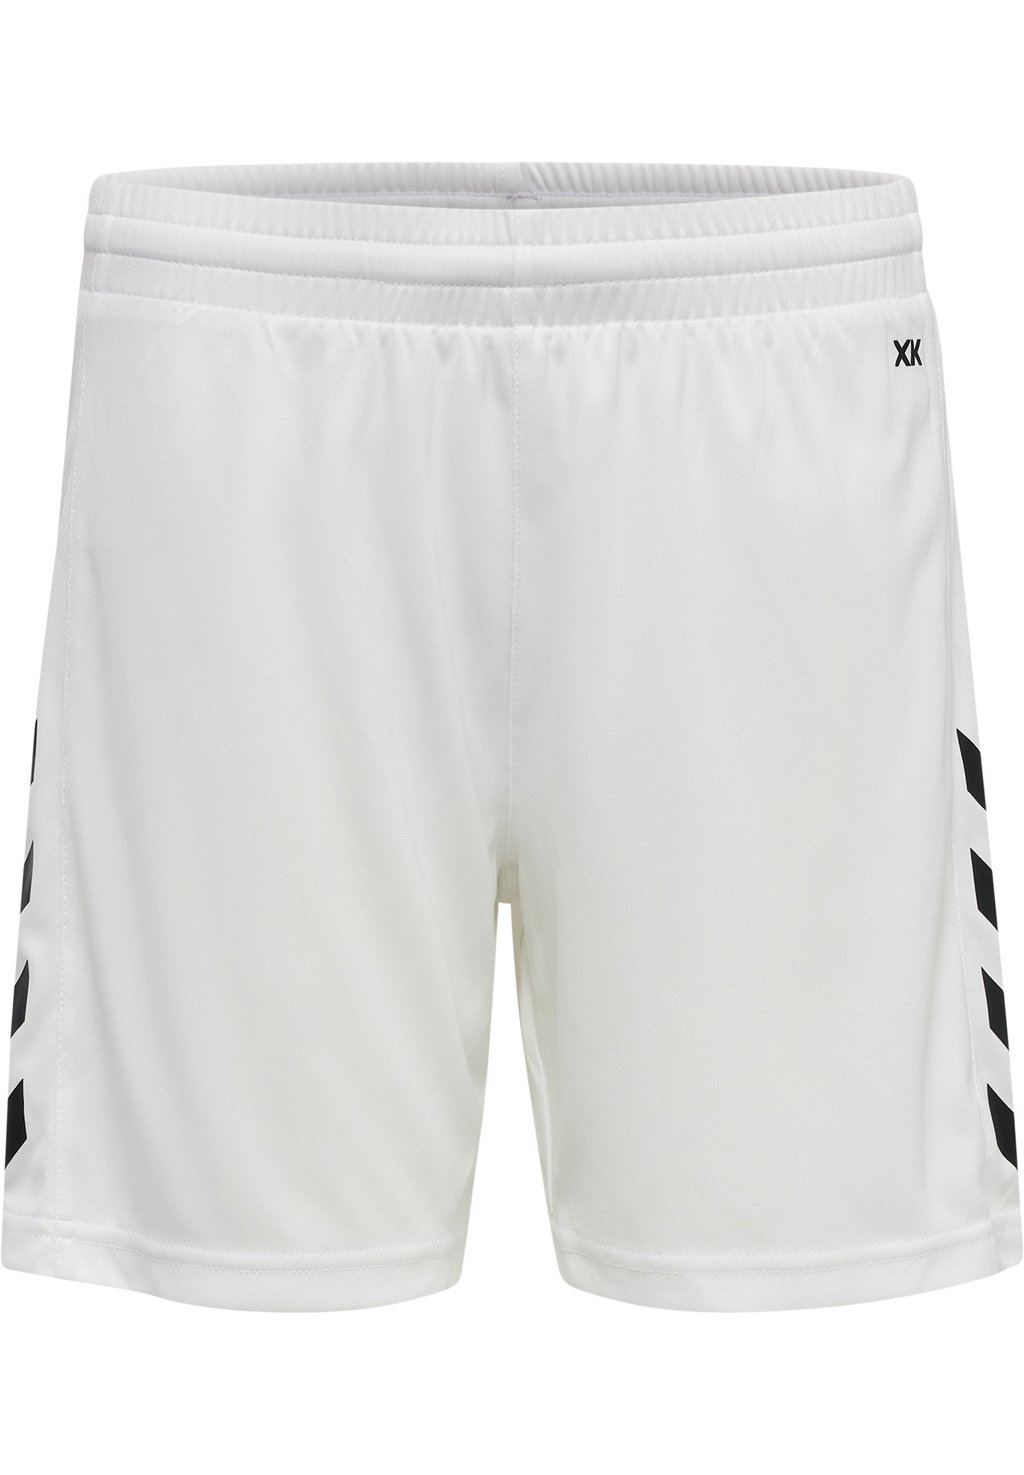 Спортивные шорты CORE XK POLY Hummel, цвет white спортивные шорты core xk poly hummel цвет acai